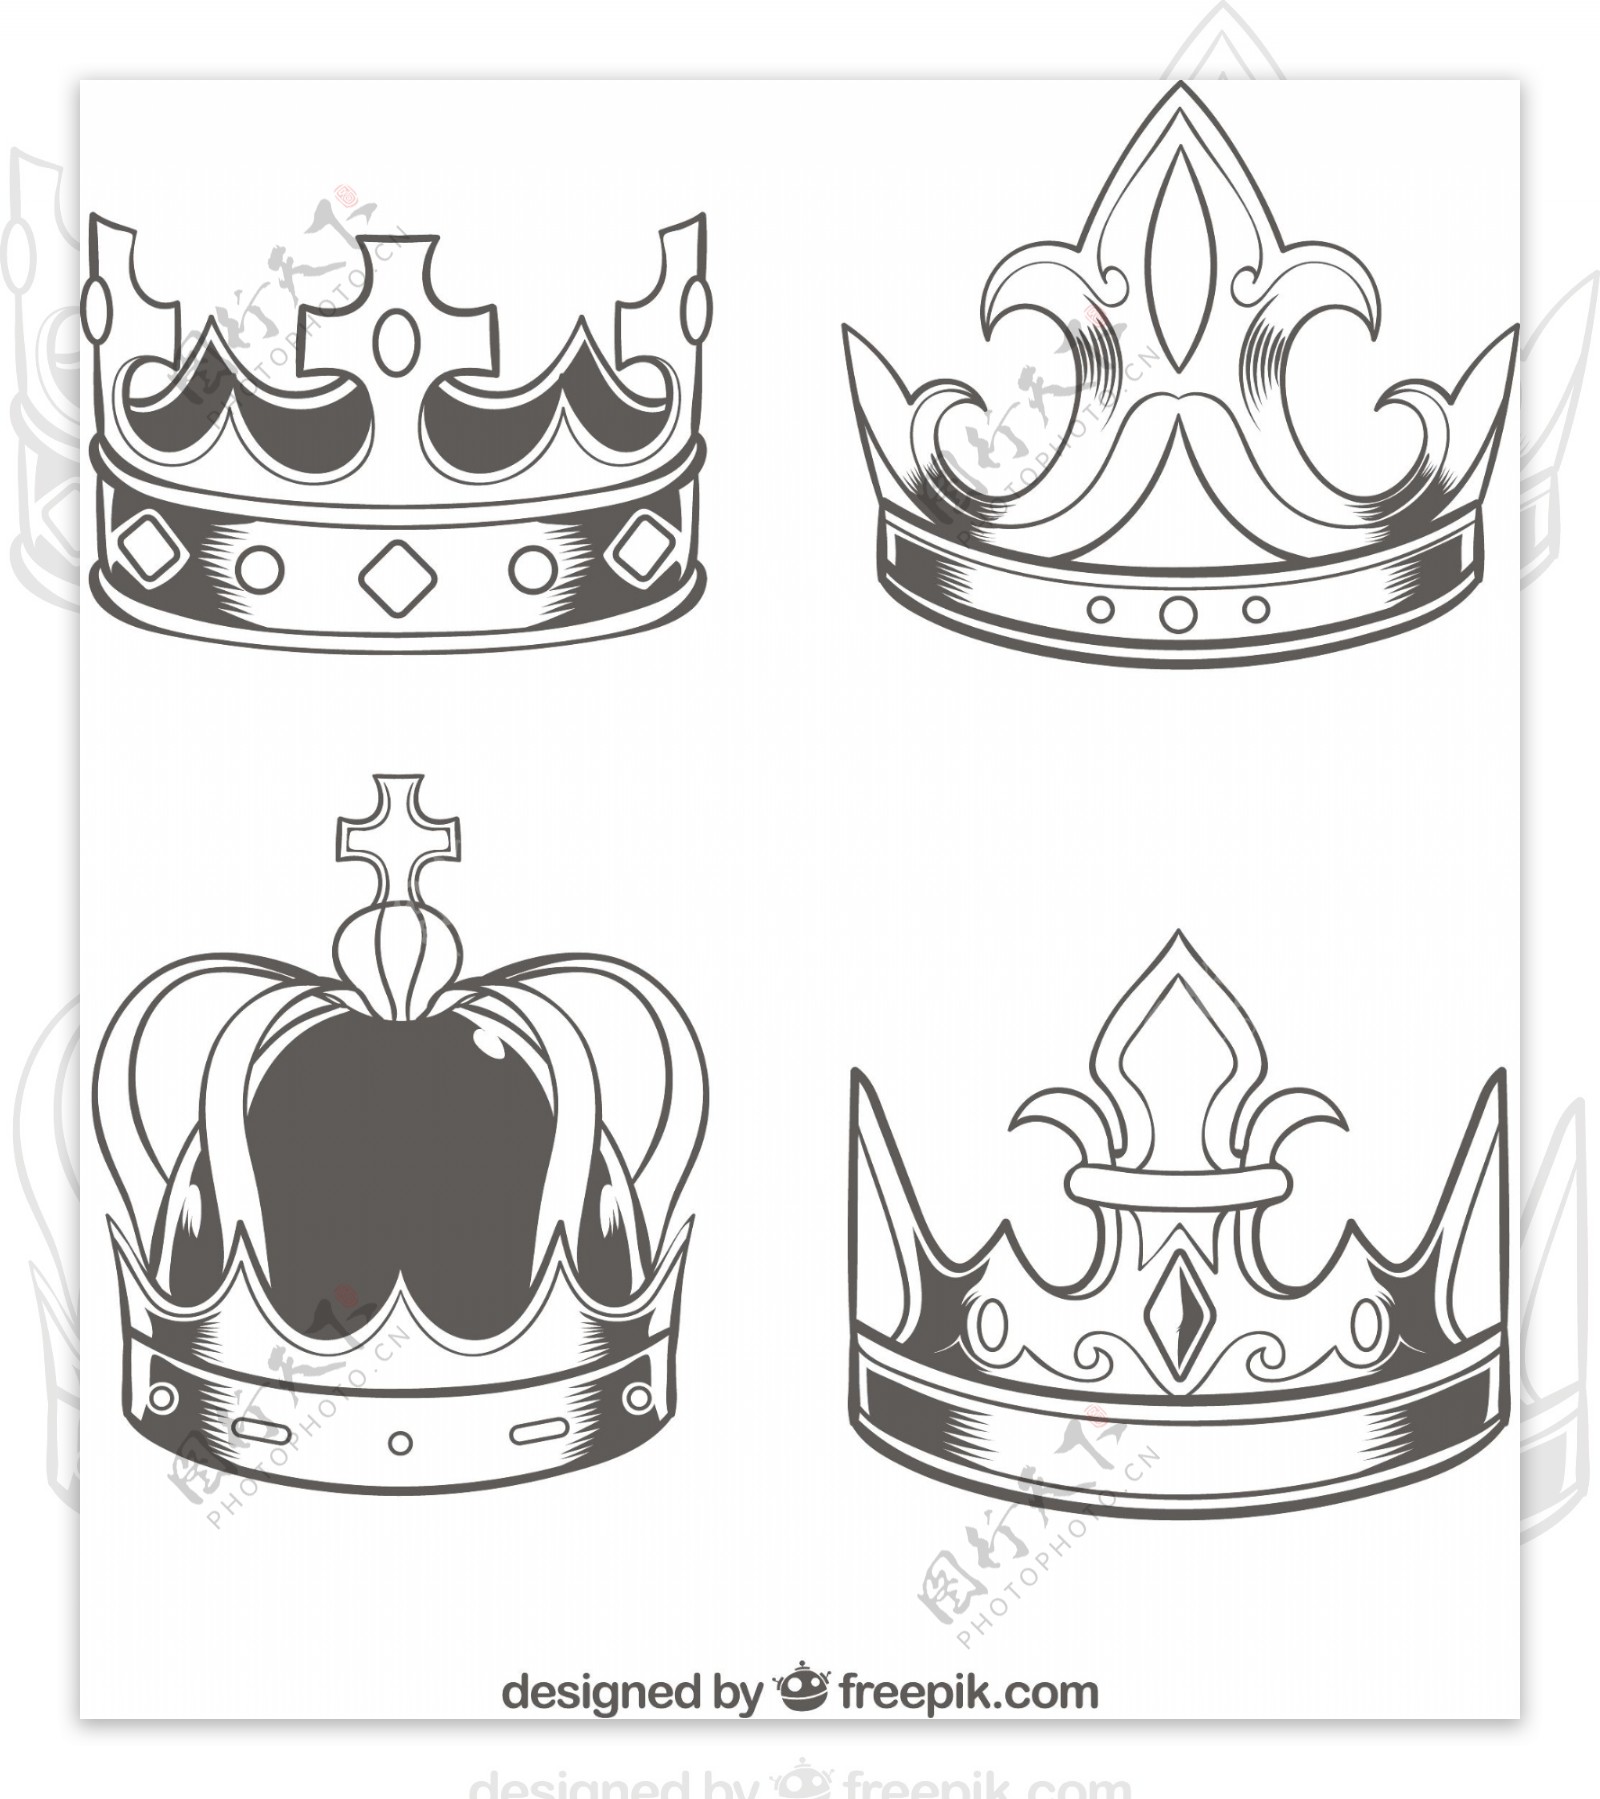 四个写实素描风格矢量皇冠图标